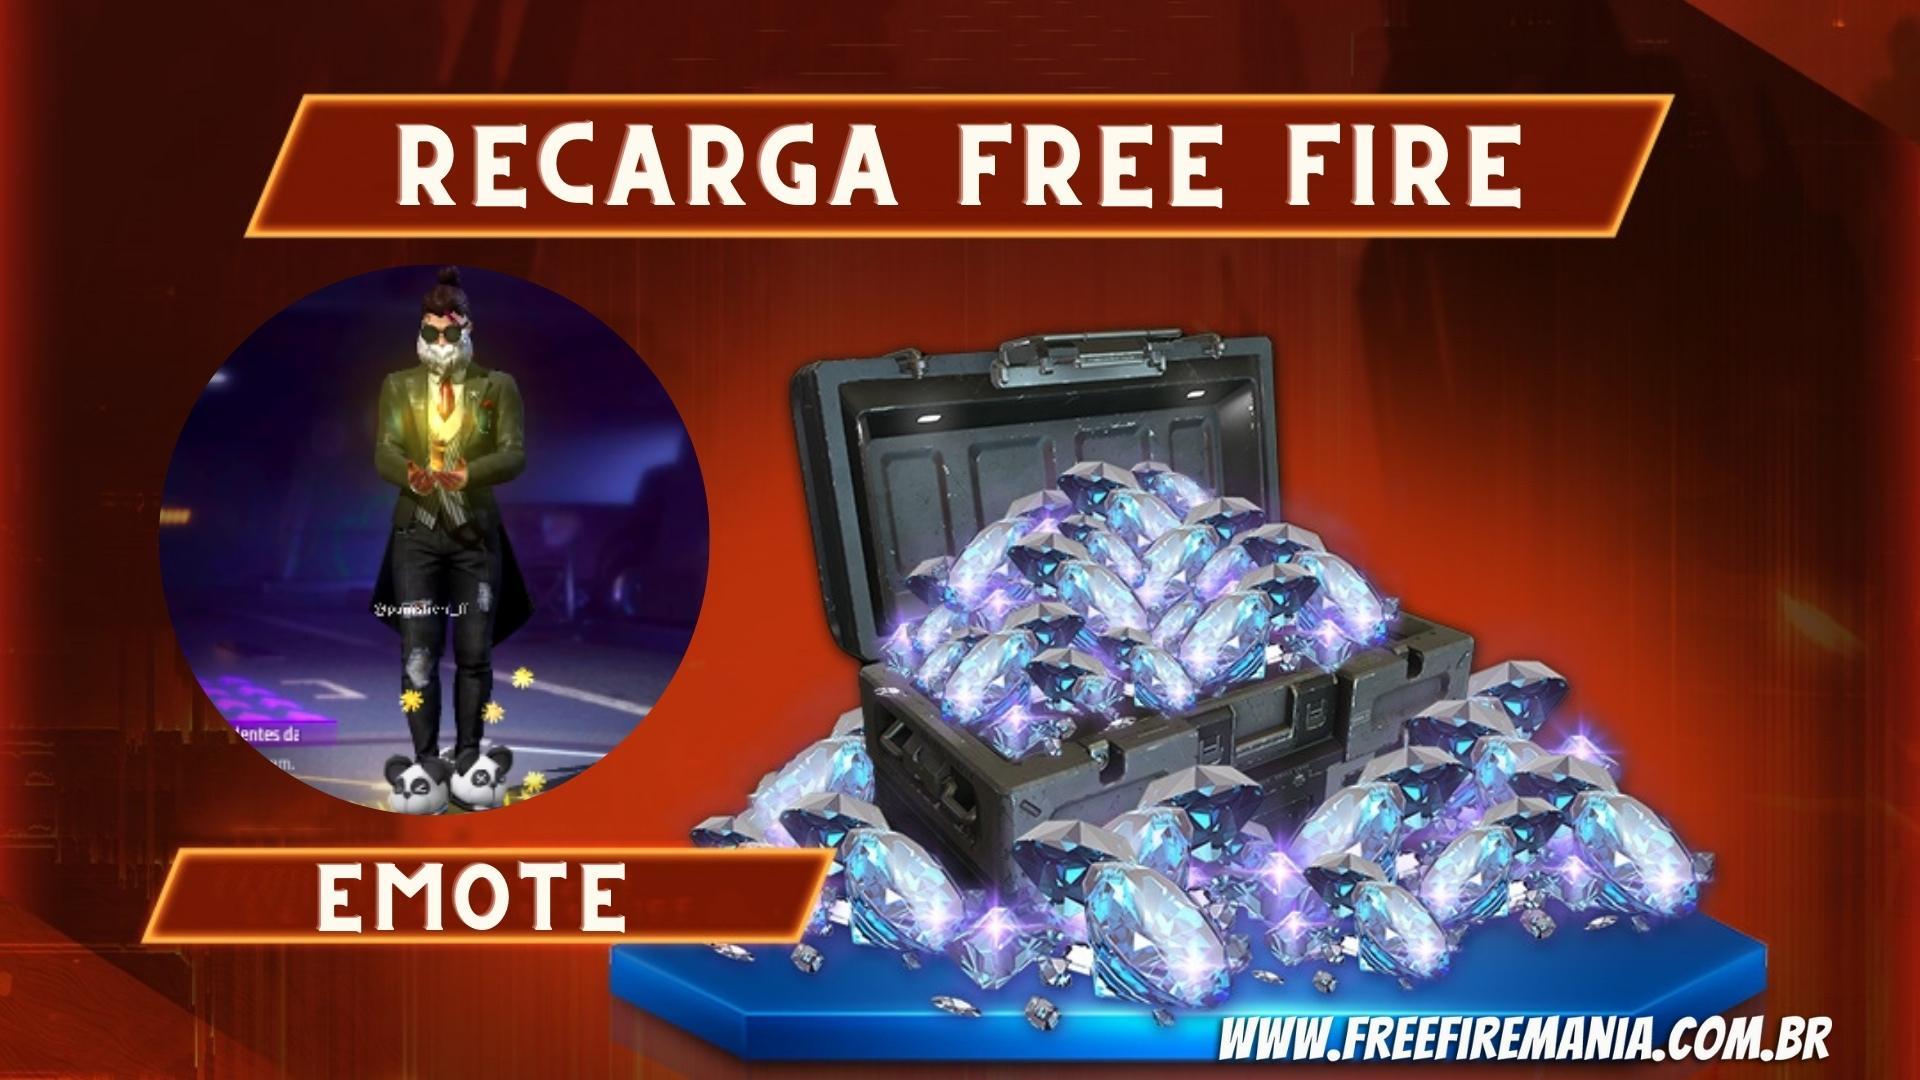 Free Fire: Evento de Recarga dá até 110% em Diamantes no jogo